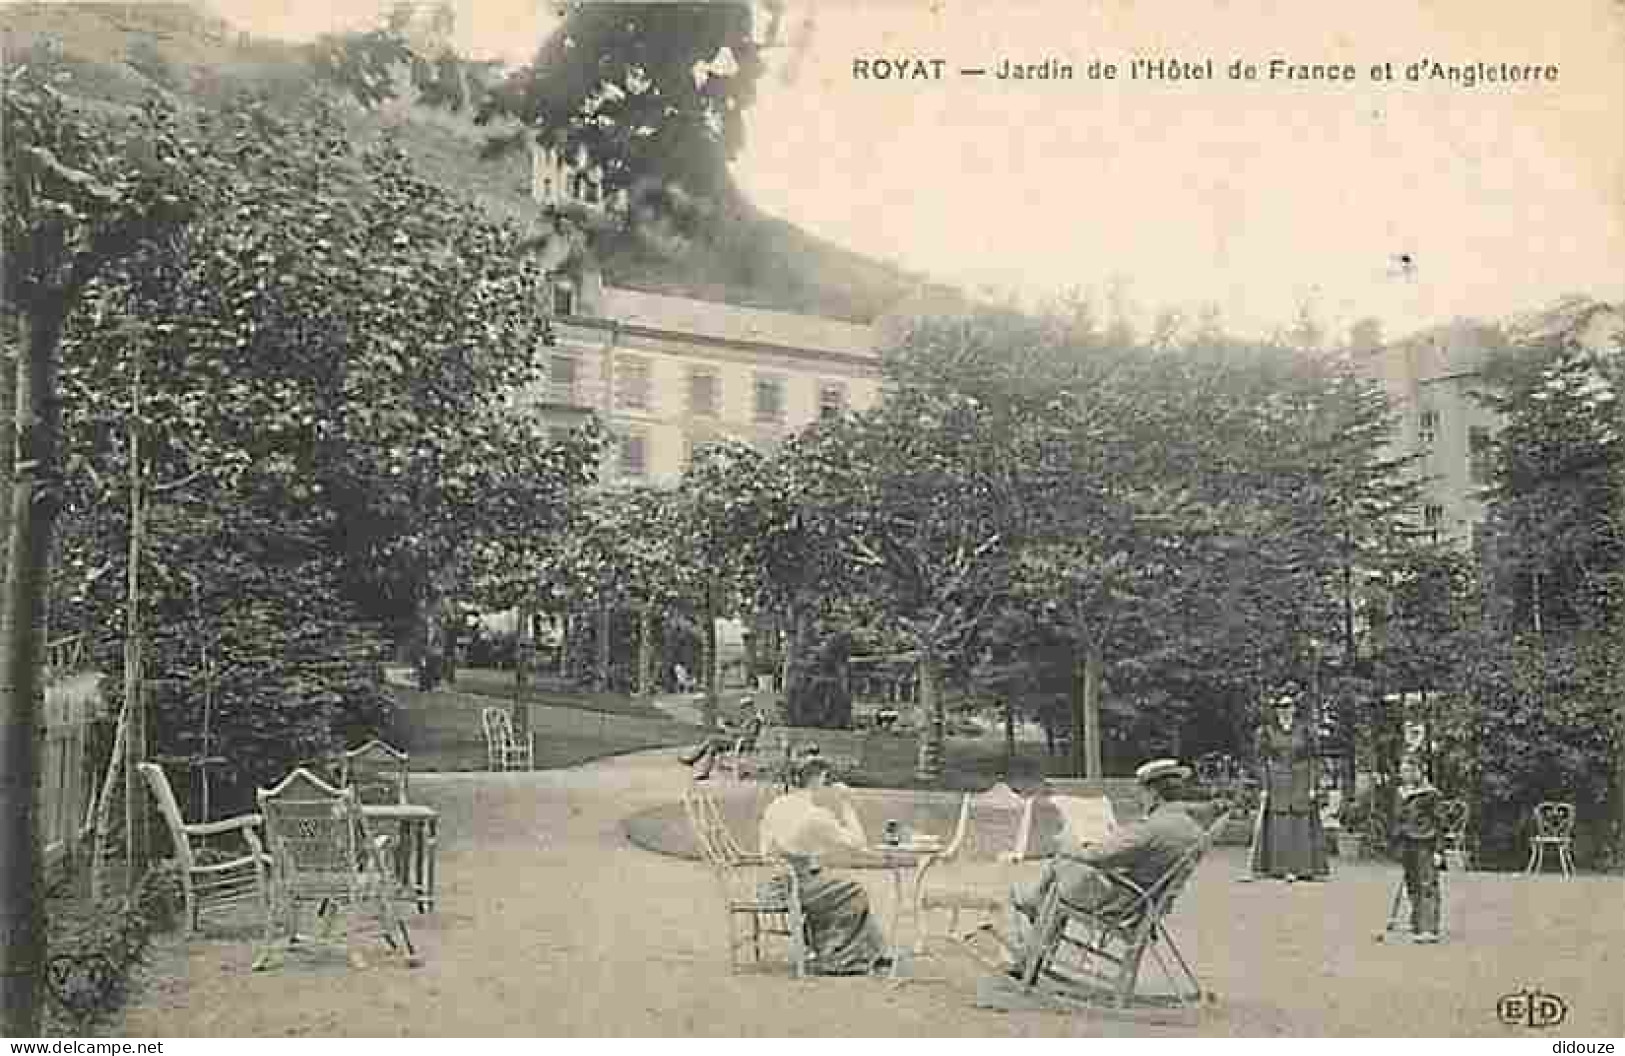 63 - Royat - Jardin De L'Hotel De France Et D'Angleterre - Animée - Rocking Chair - Jeu De Quilles Au Maillet - CPA - Vo - Royat